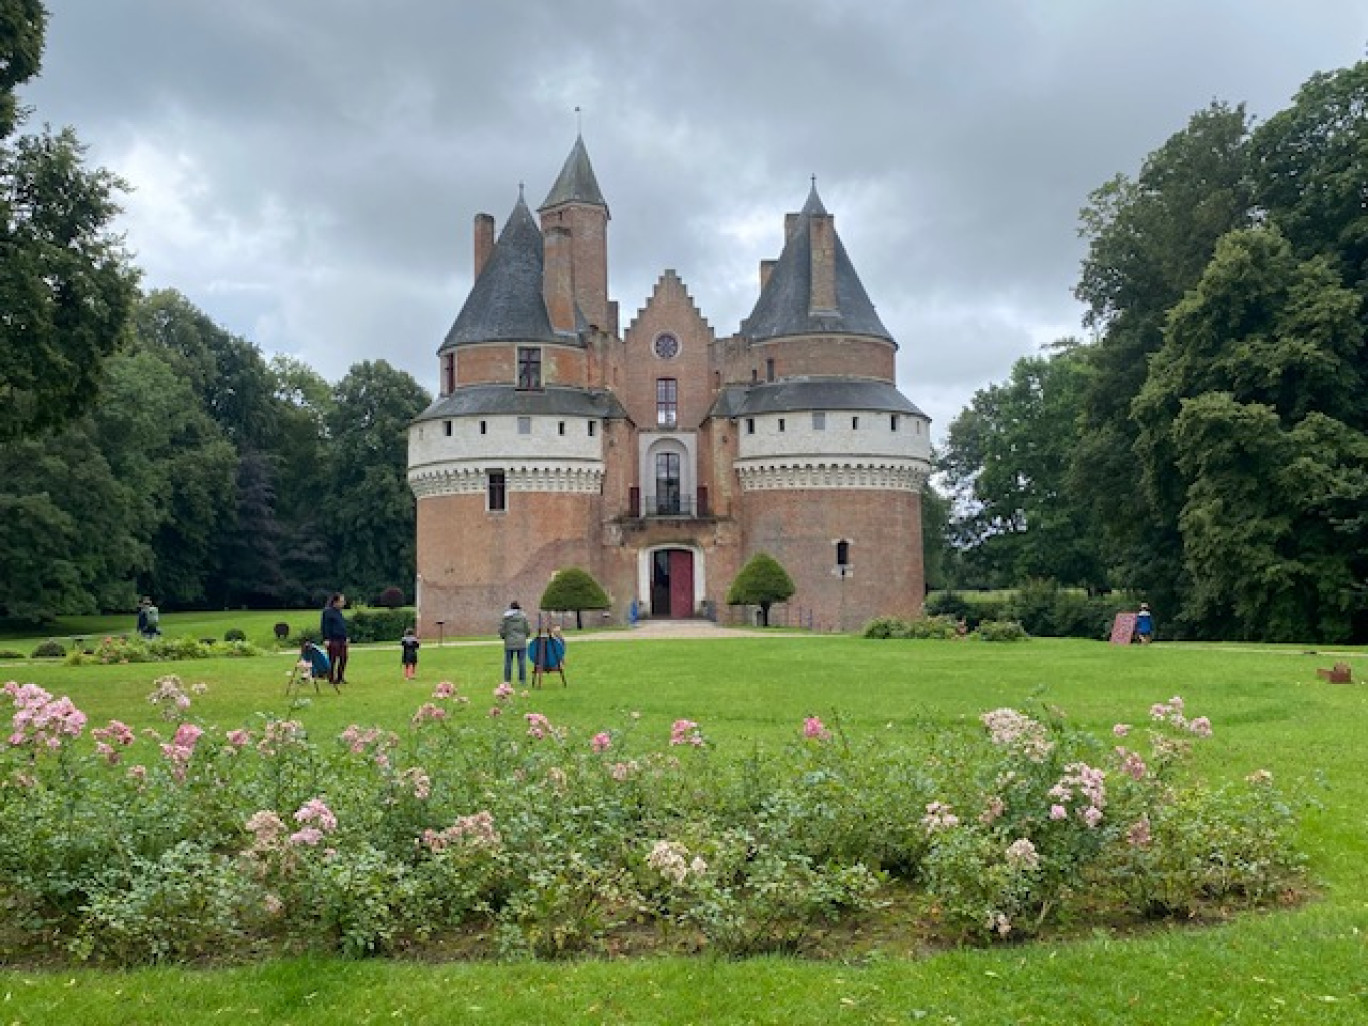 Château médiéval et familial, Rambures accueille familles, scolaires et entreprises.